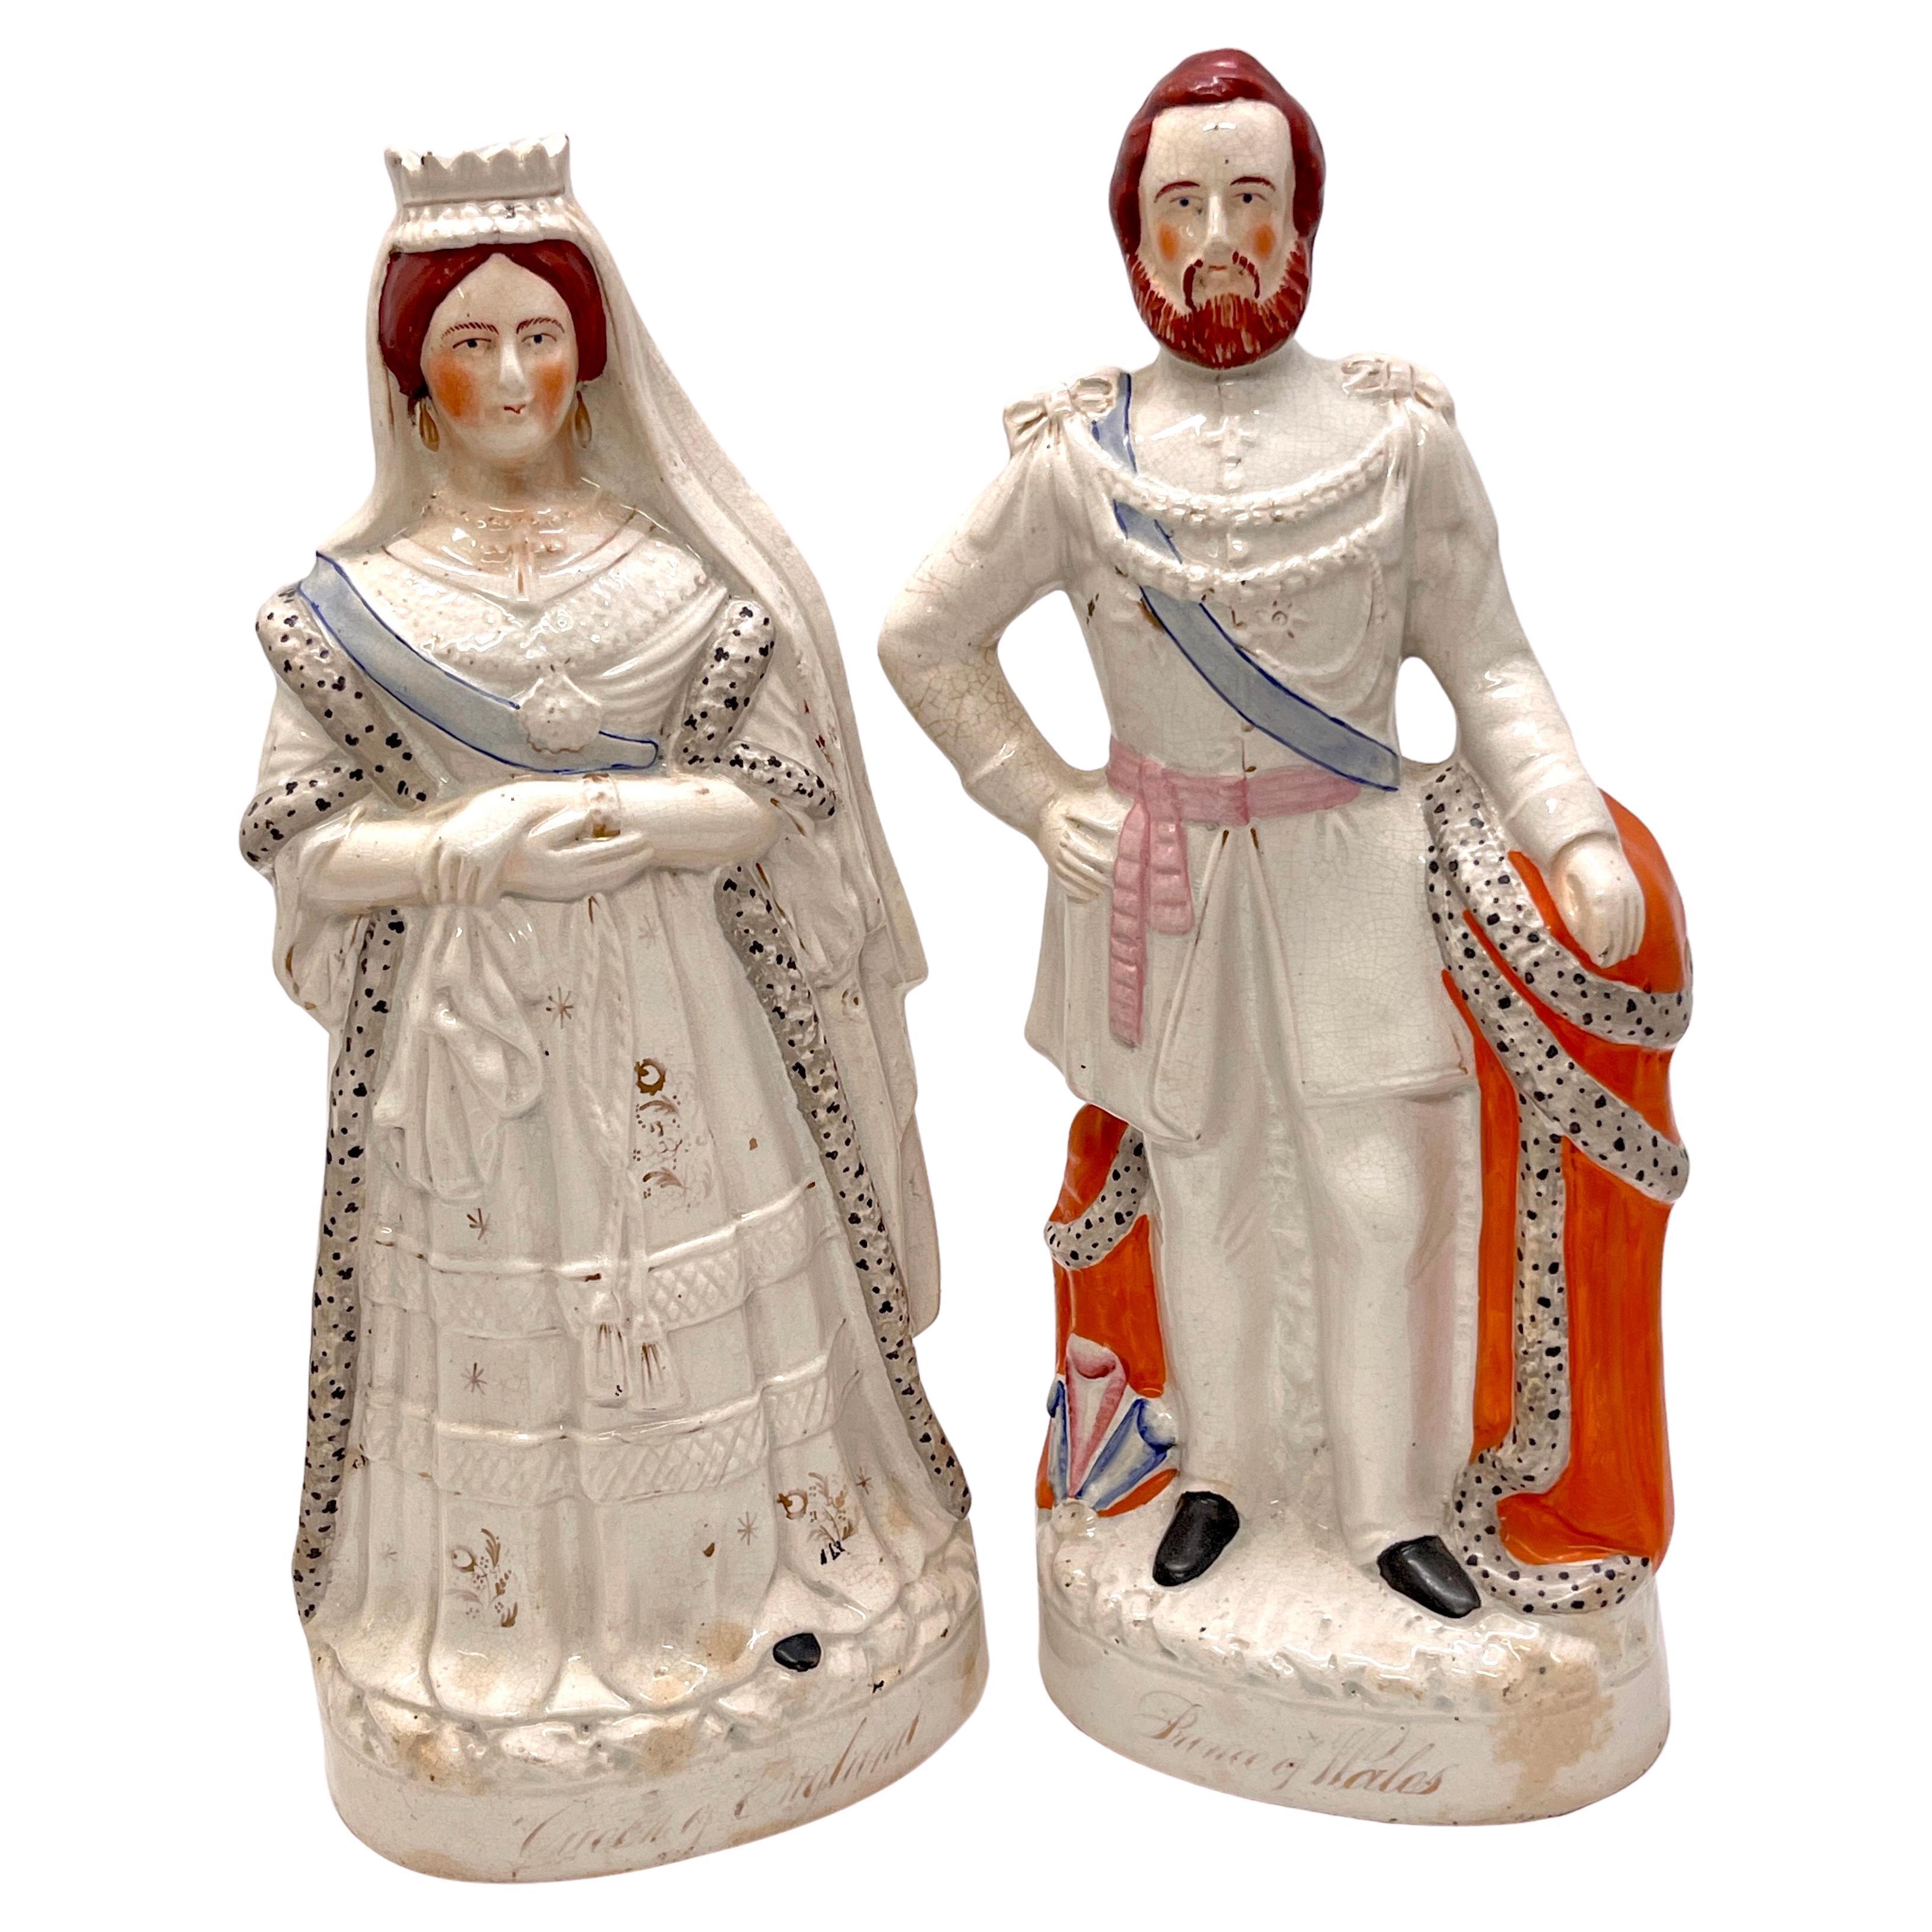 Figurines du 19ème siècle en Staffordshire représentant la Reine Victoria et le Prince Albert 'Large'.